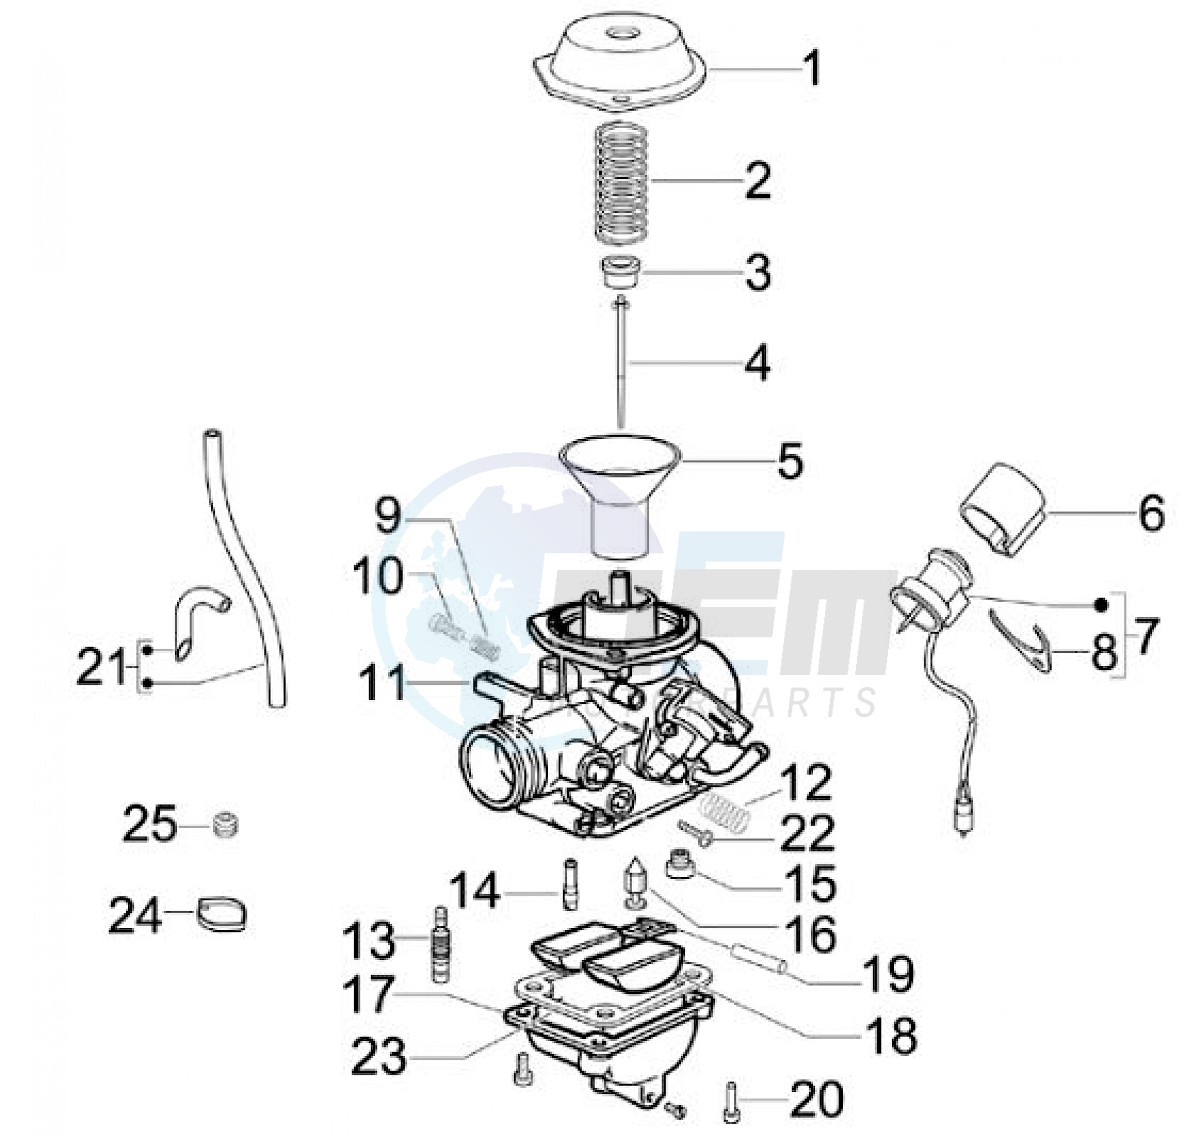 Carburetor components (Positions) blueprint